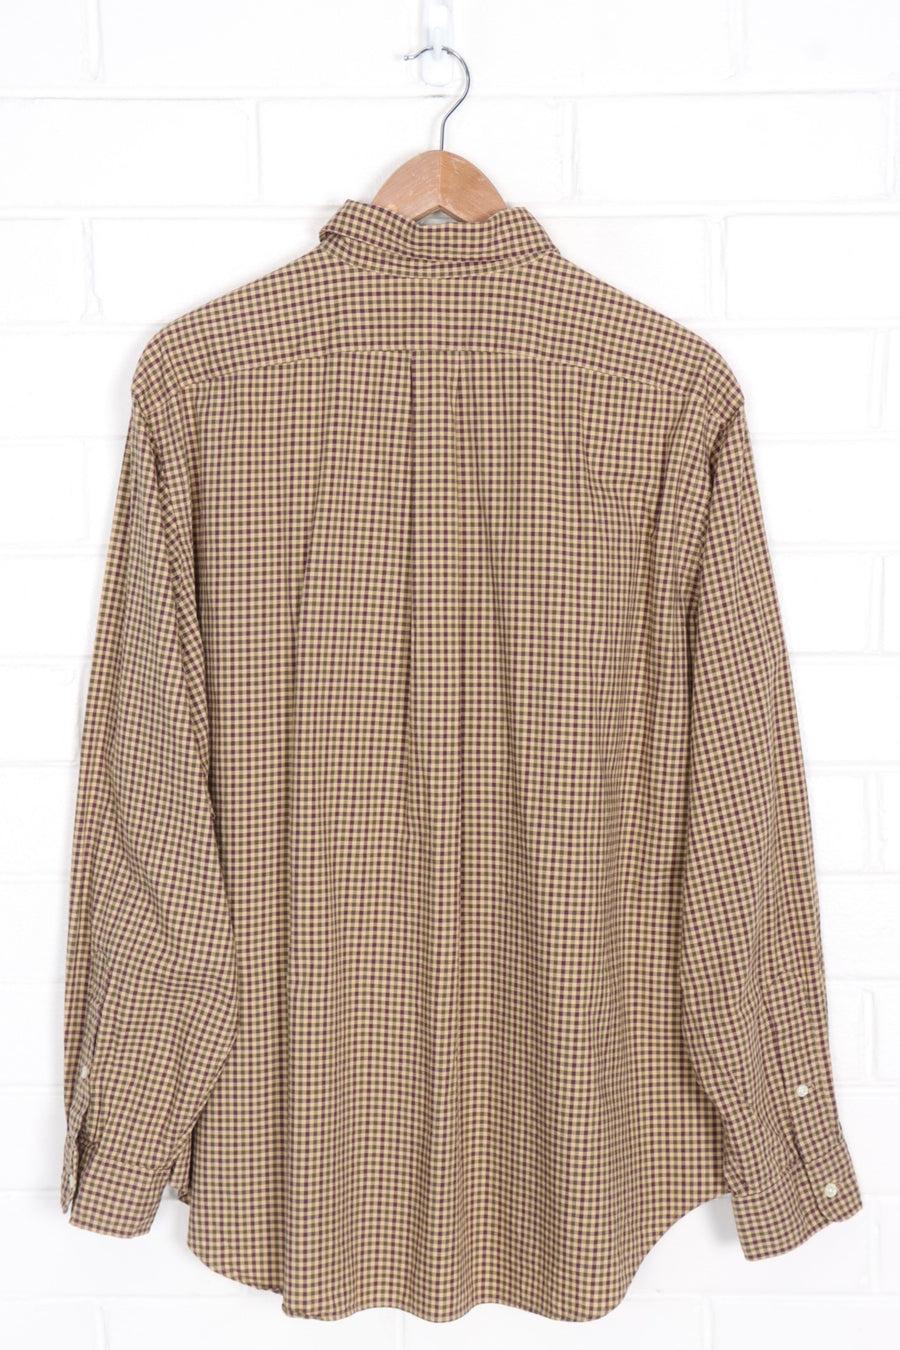 RALPH LAUREN 'Classic Fit' Brown Gingham Long Sleeve Shirt (XXL)